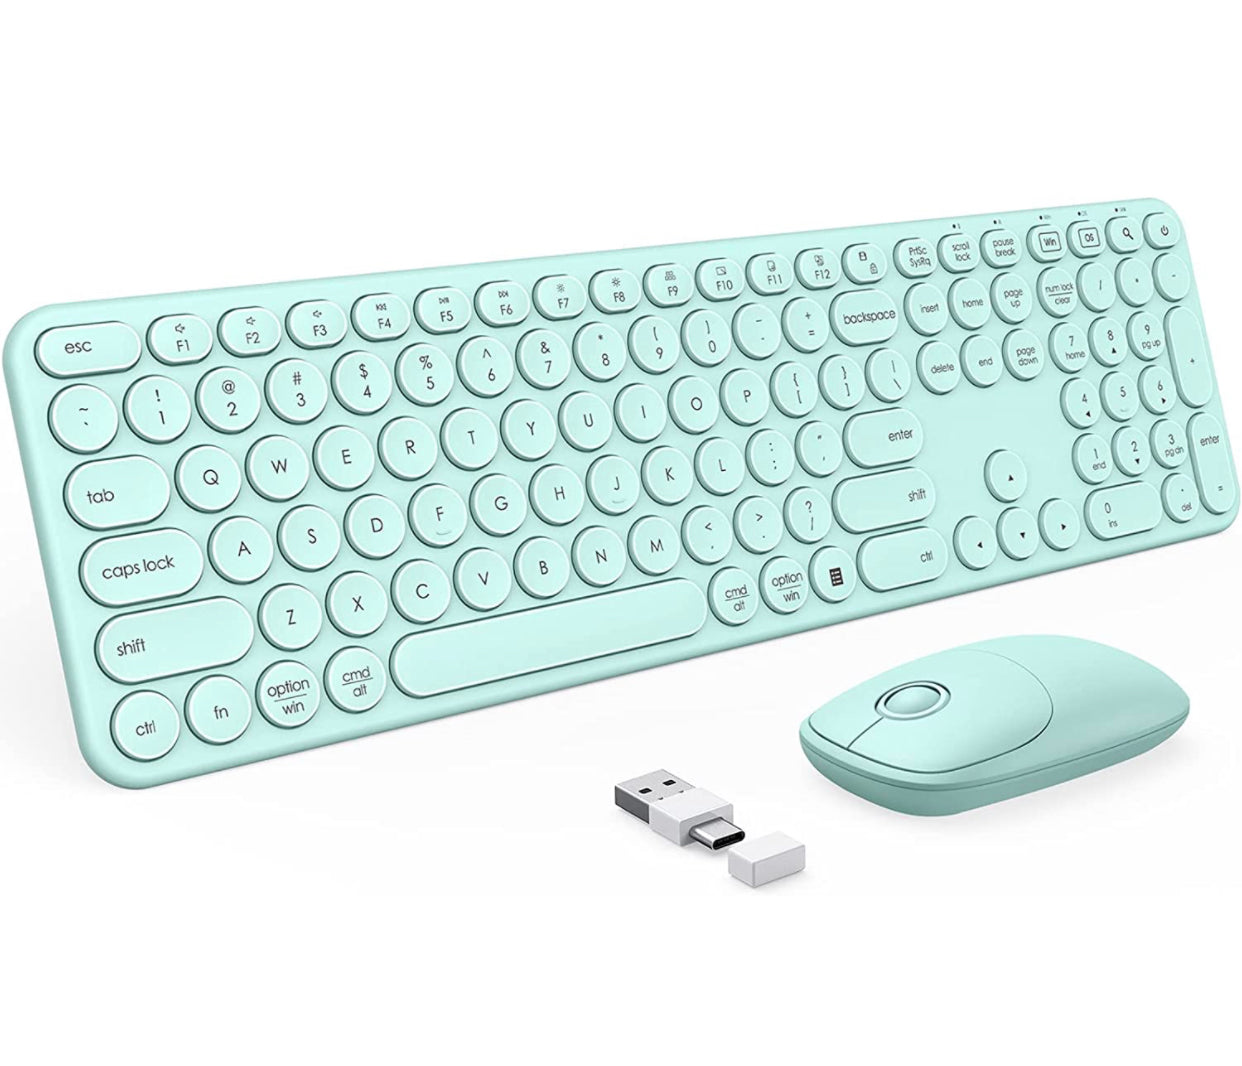 Retro Cutey wireless keyboard & mouse